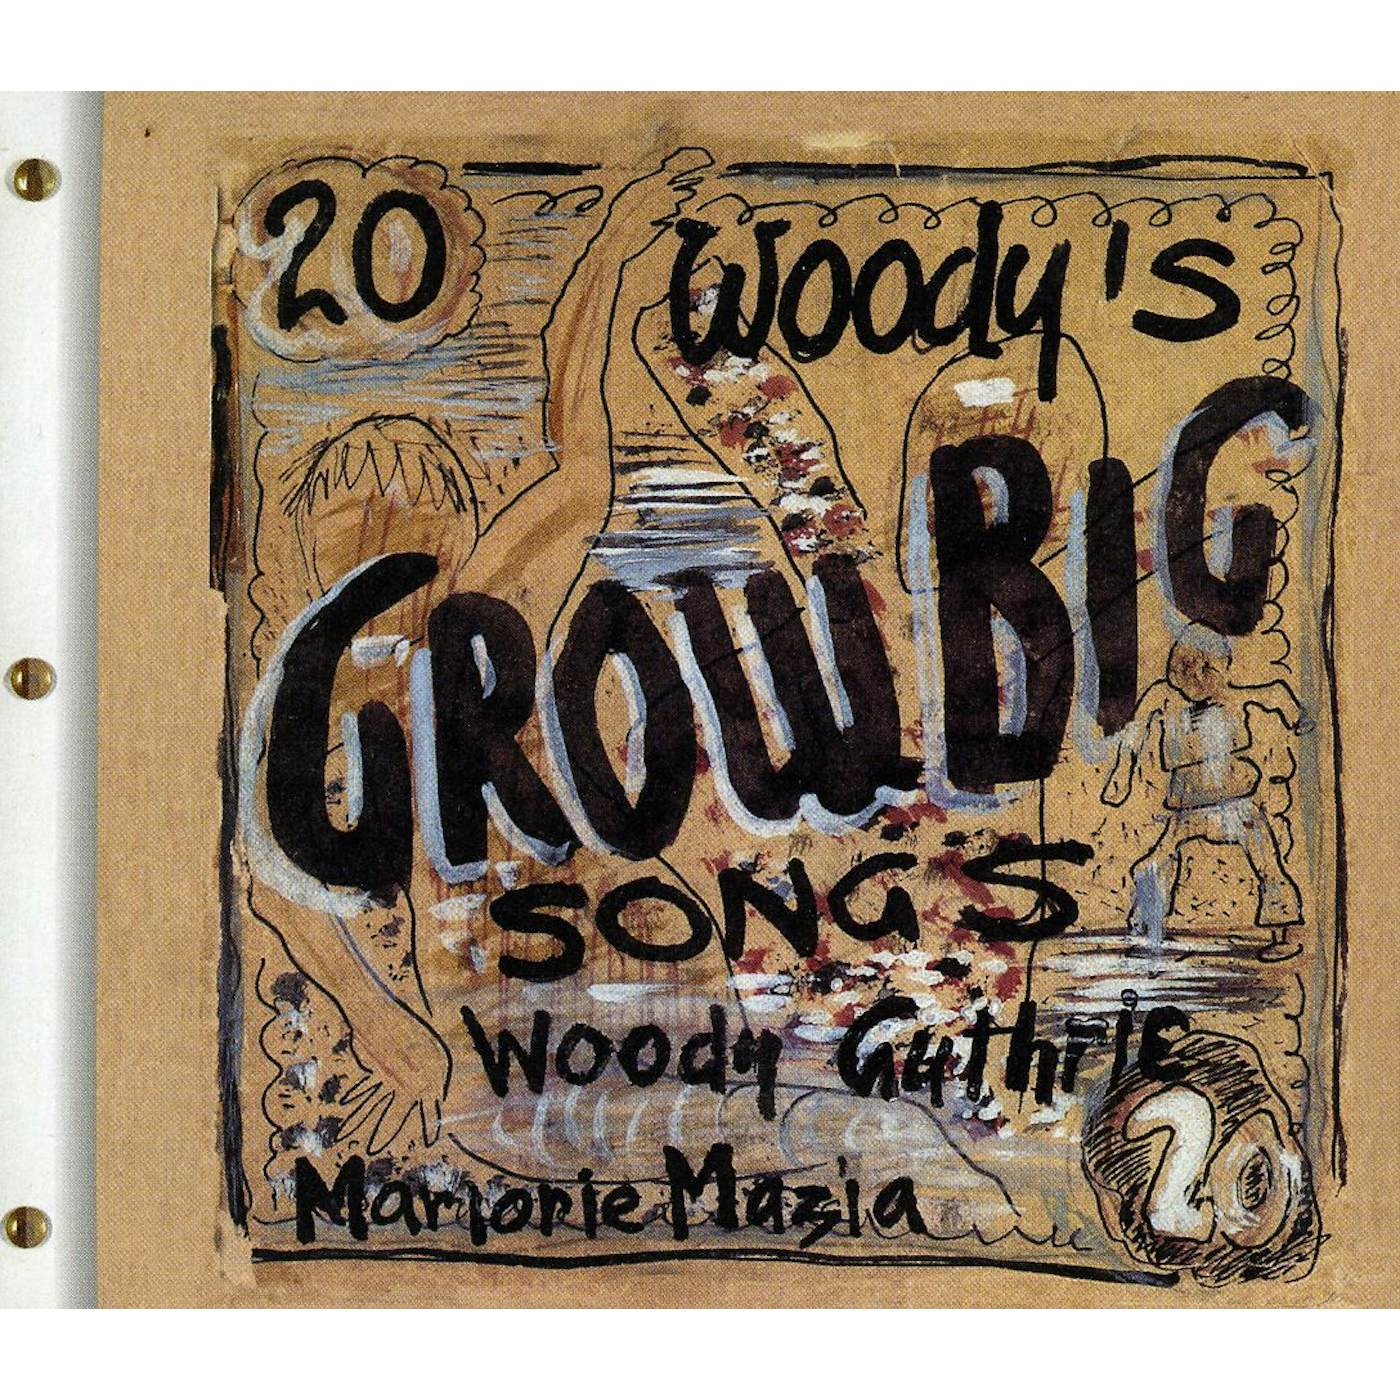 Arlo Guthrie WOODY'S 20 GROW BIG SONGS CD